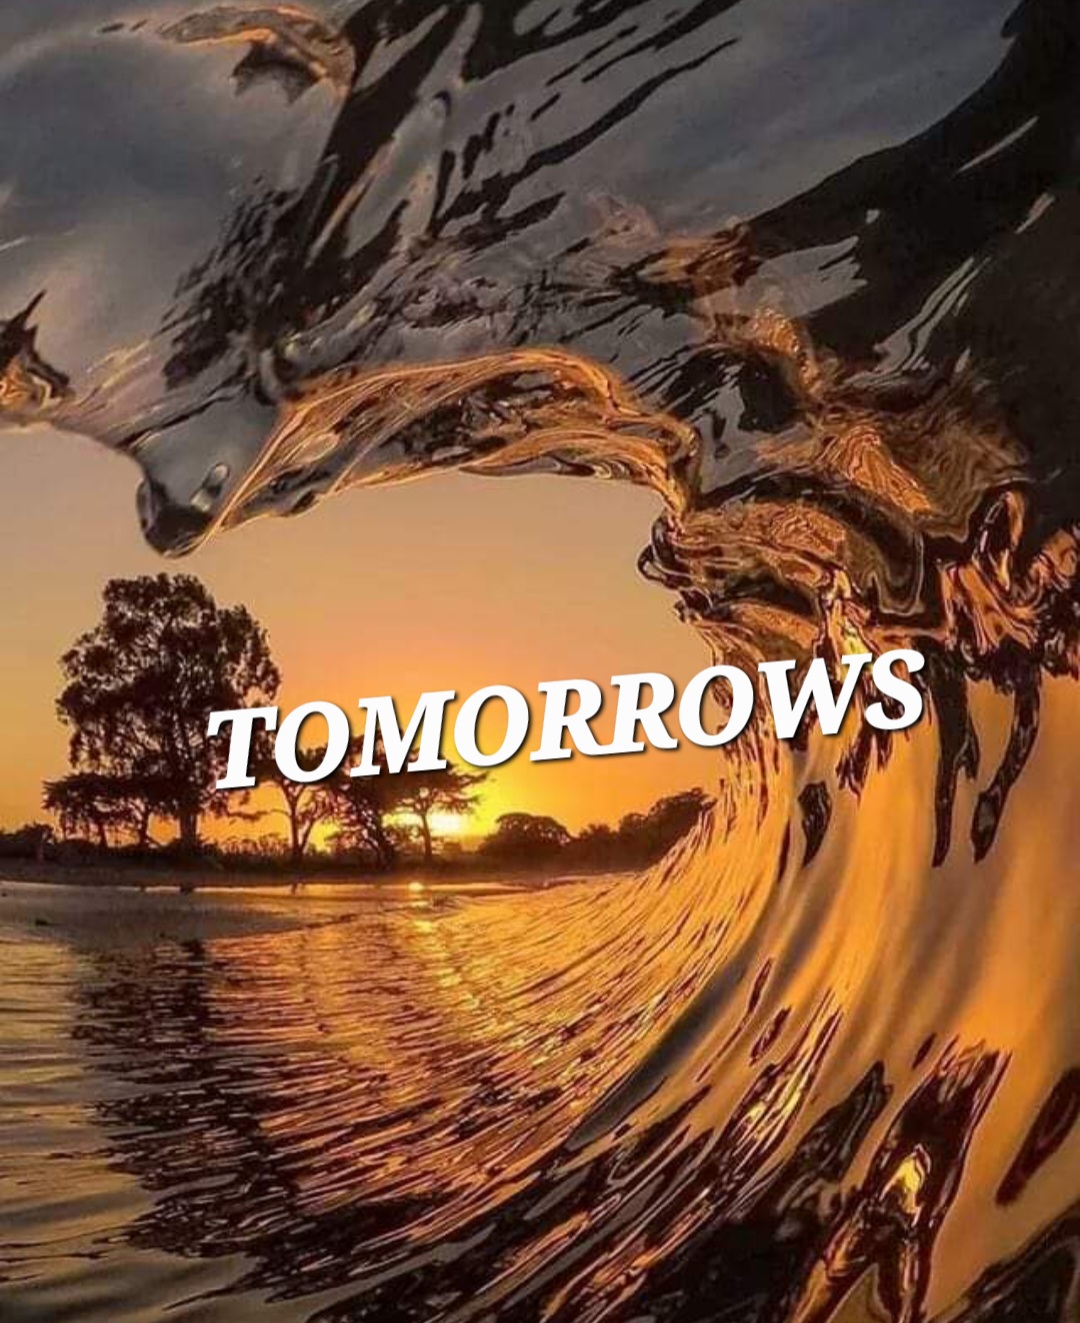 Tomorrows Are A Terror